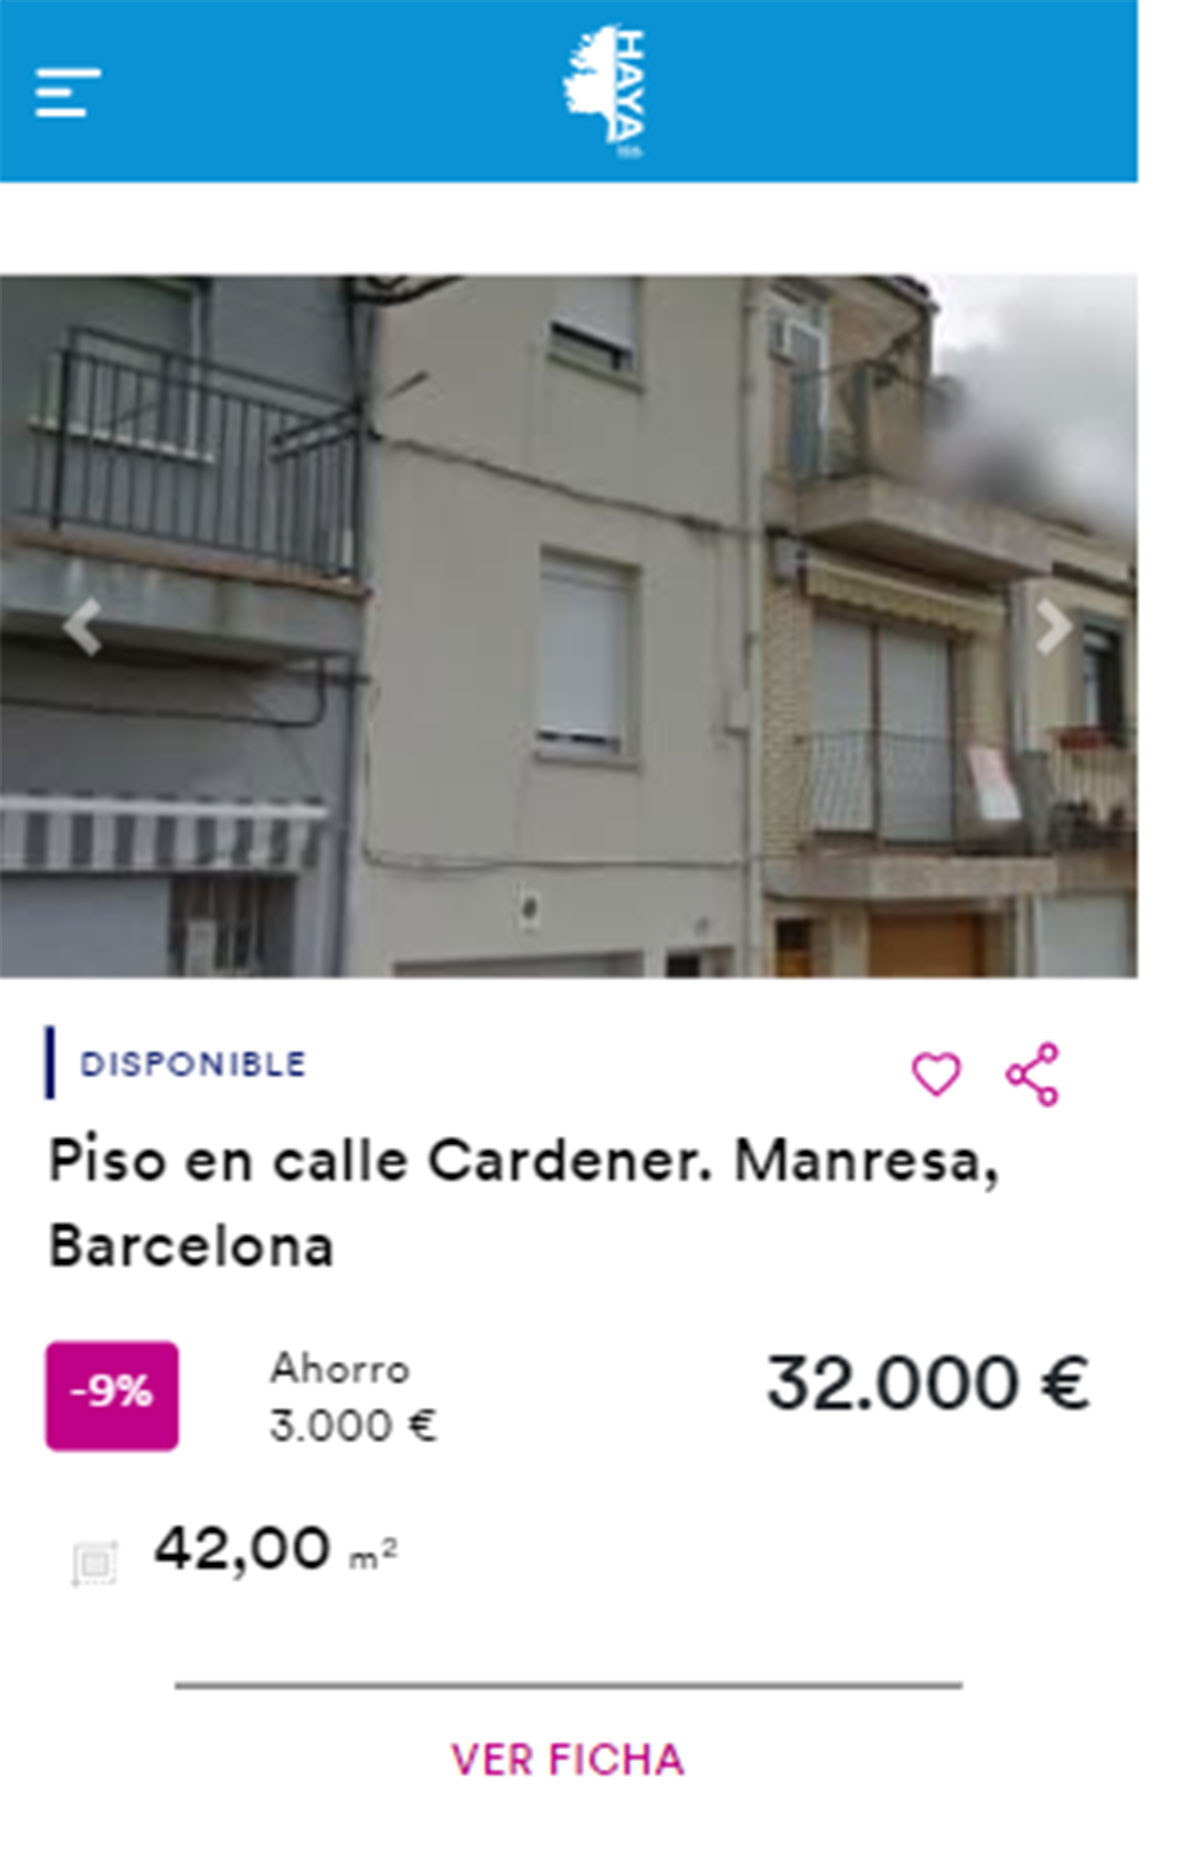 Piso en Barcelona por 32.000 euros